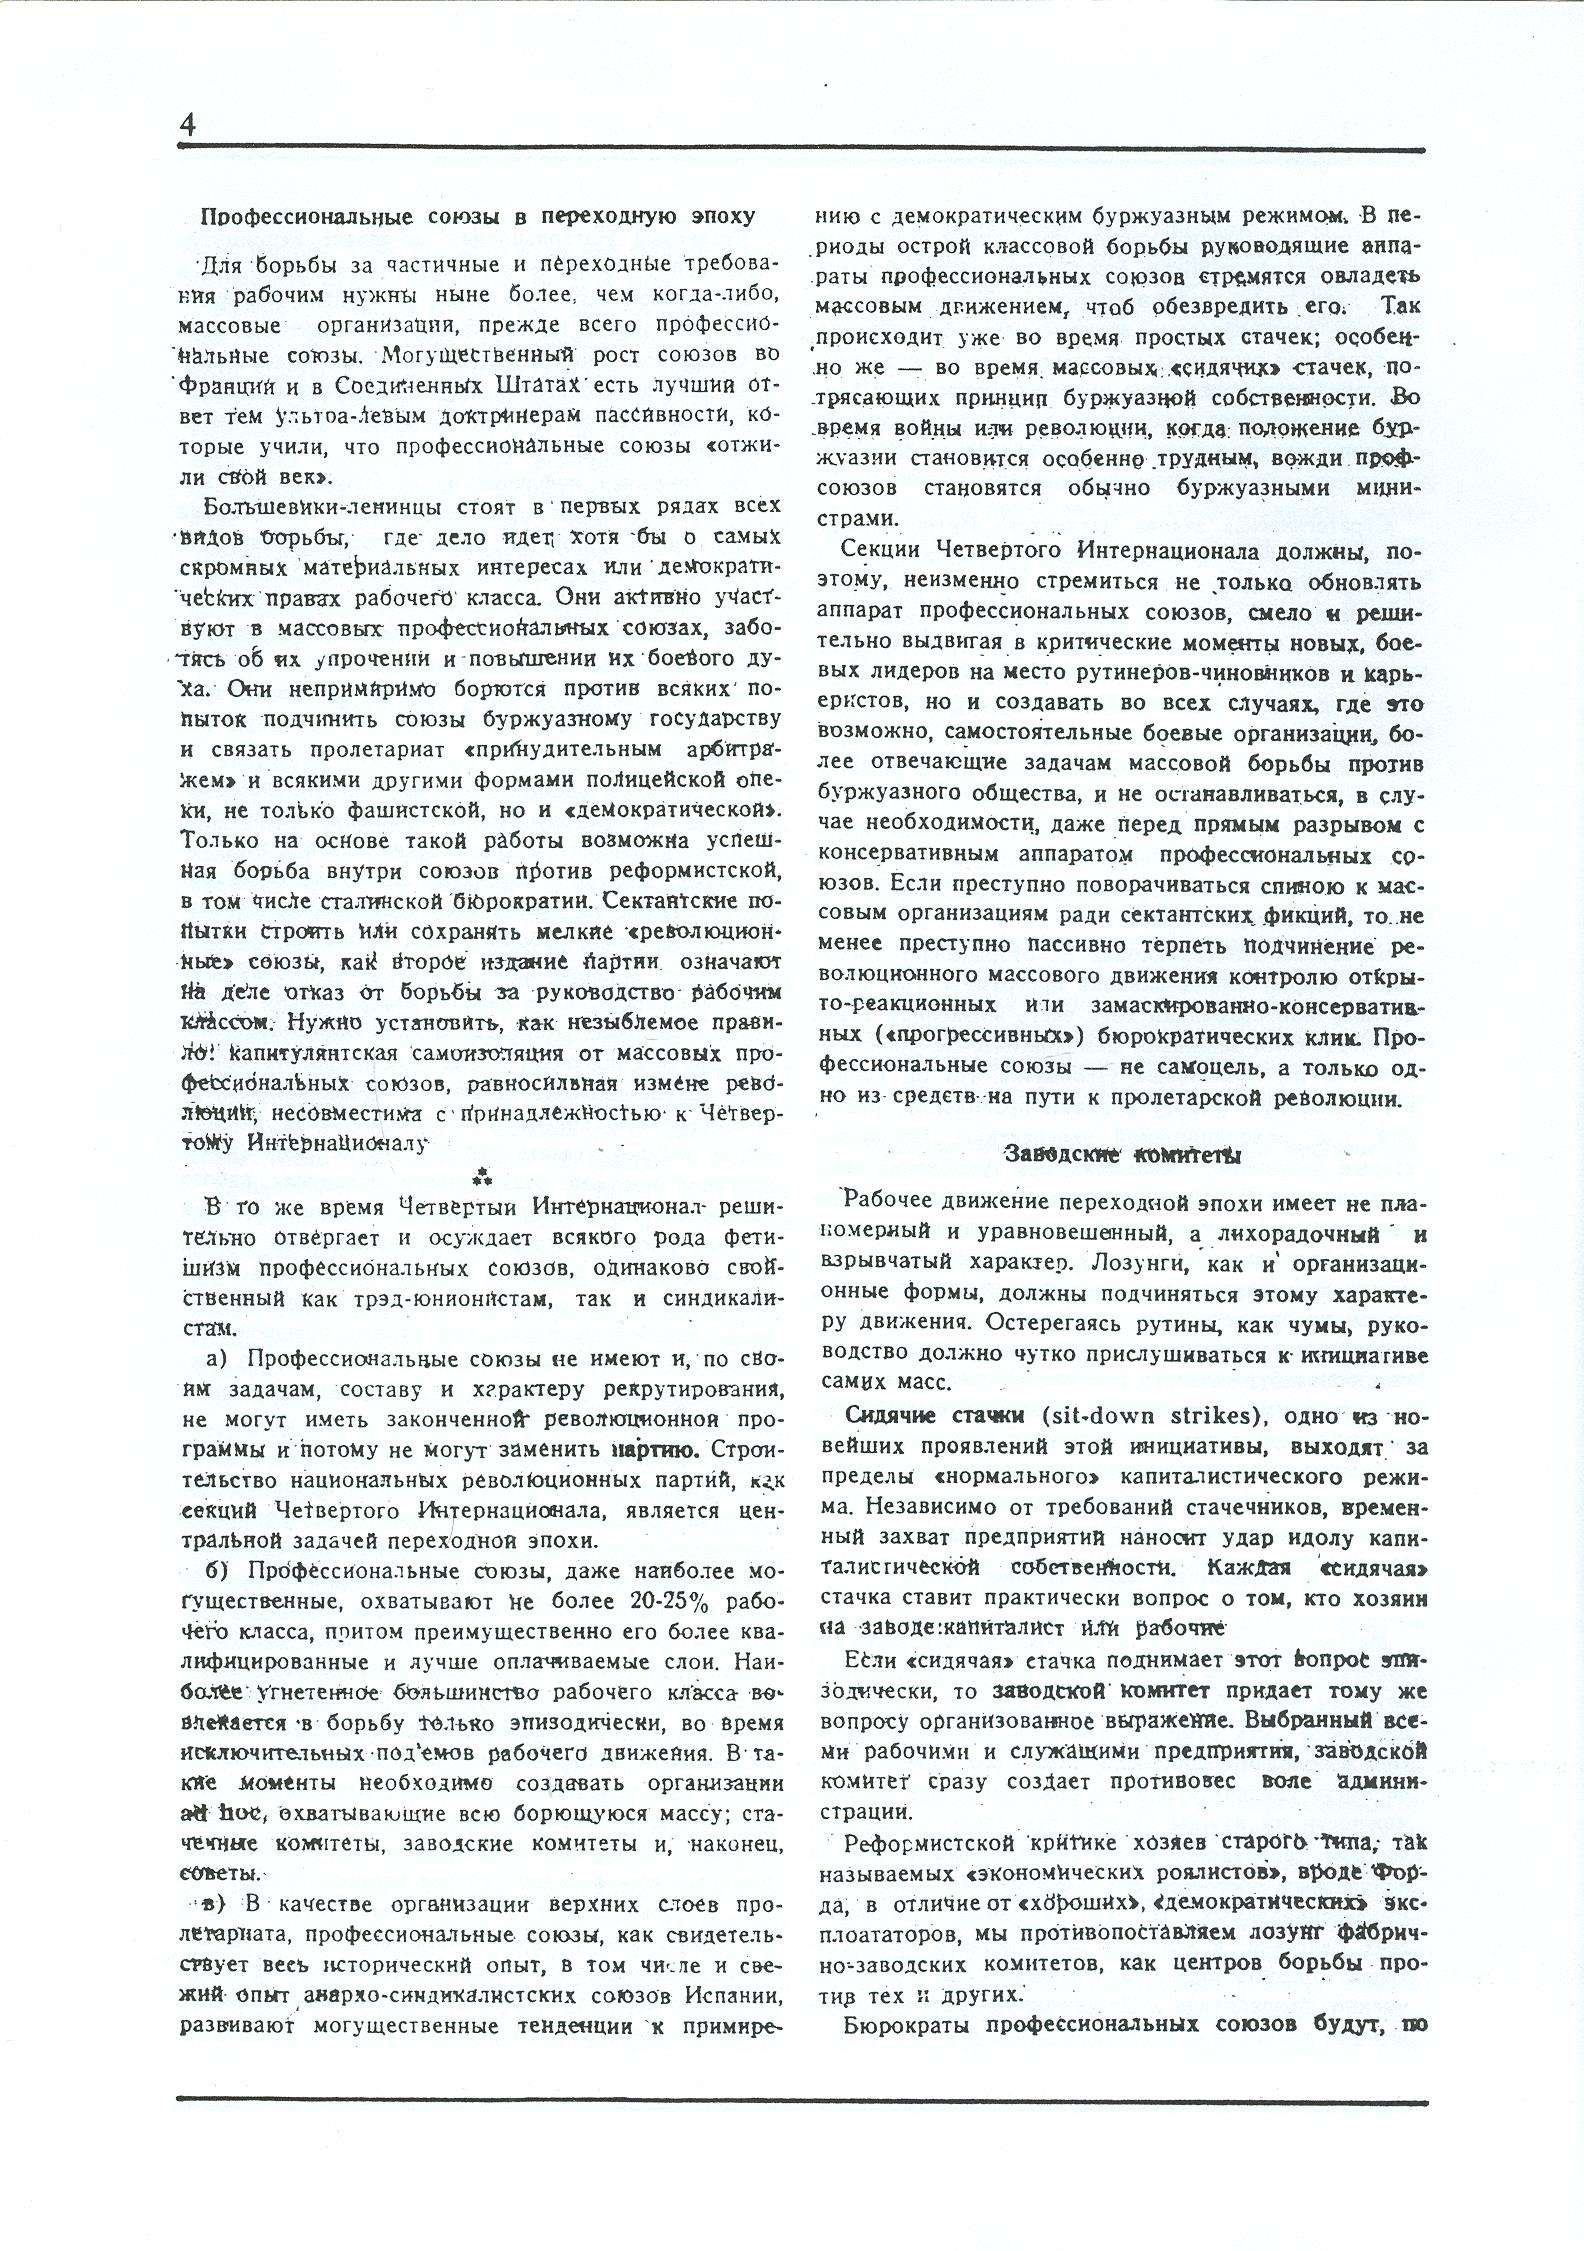 Dagli archivi del bolscevismo n. 1 (marzo 1986) - pag. 4